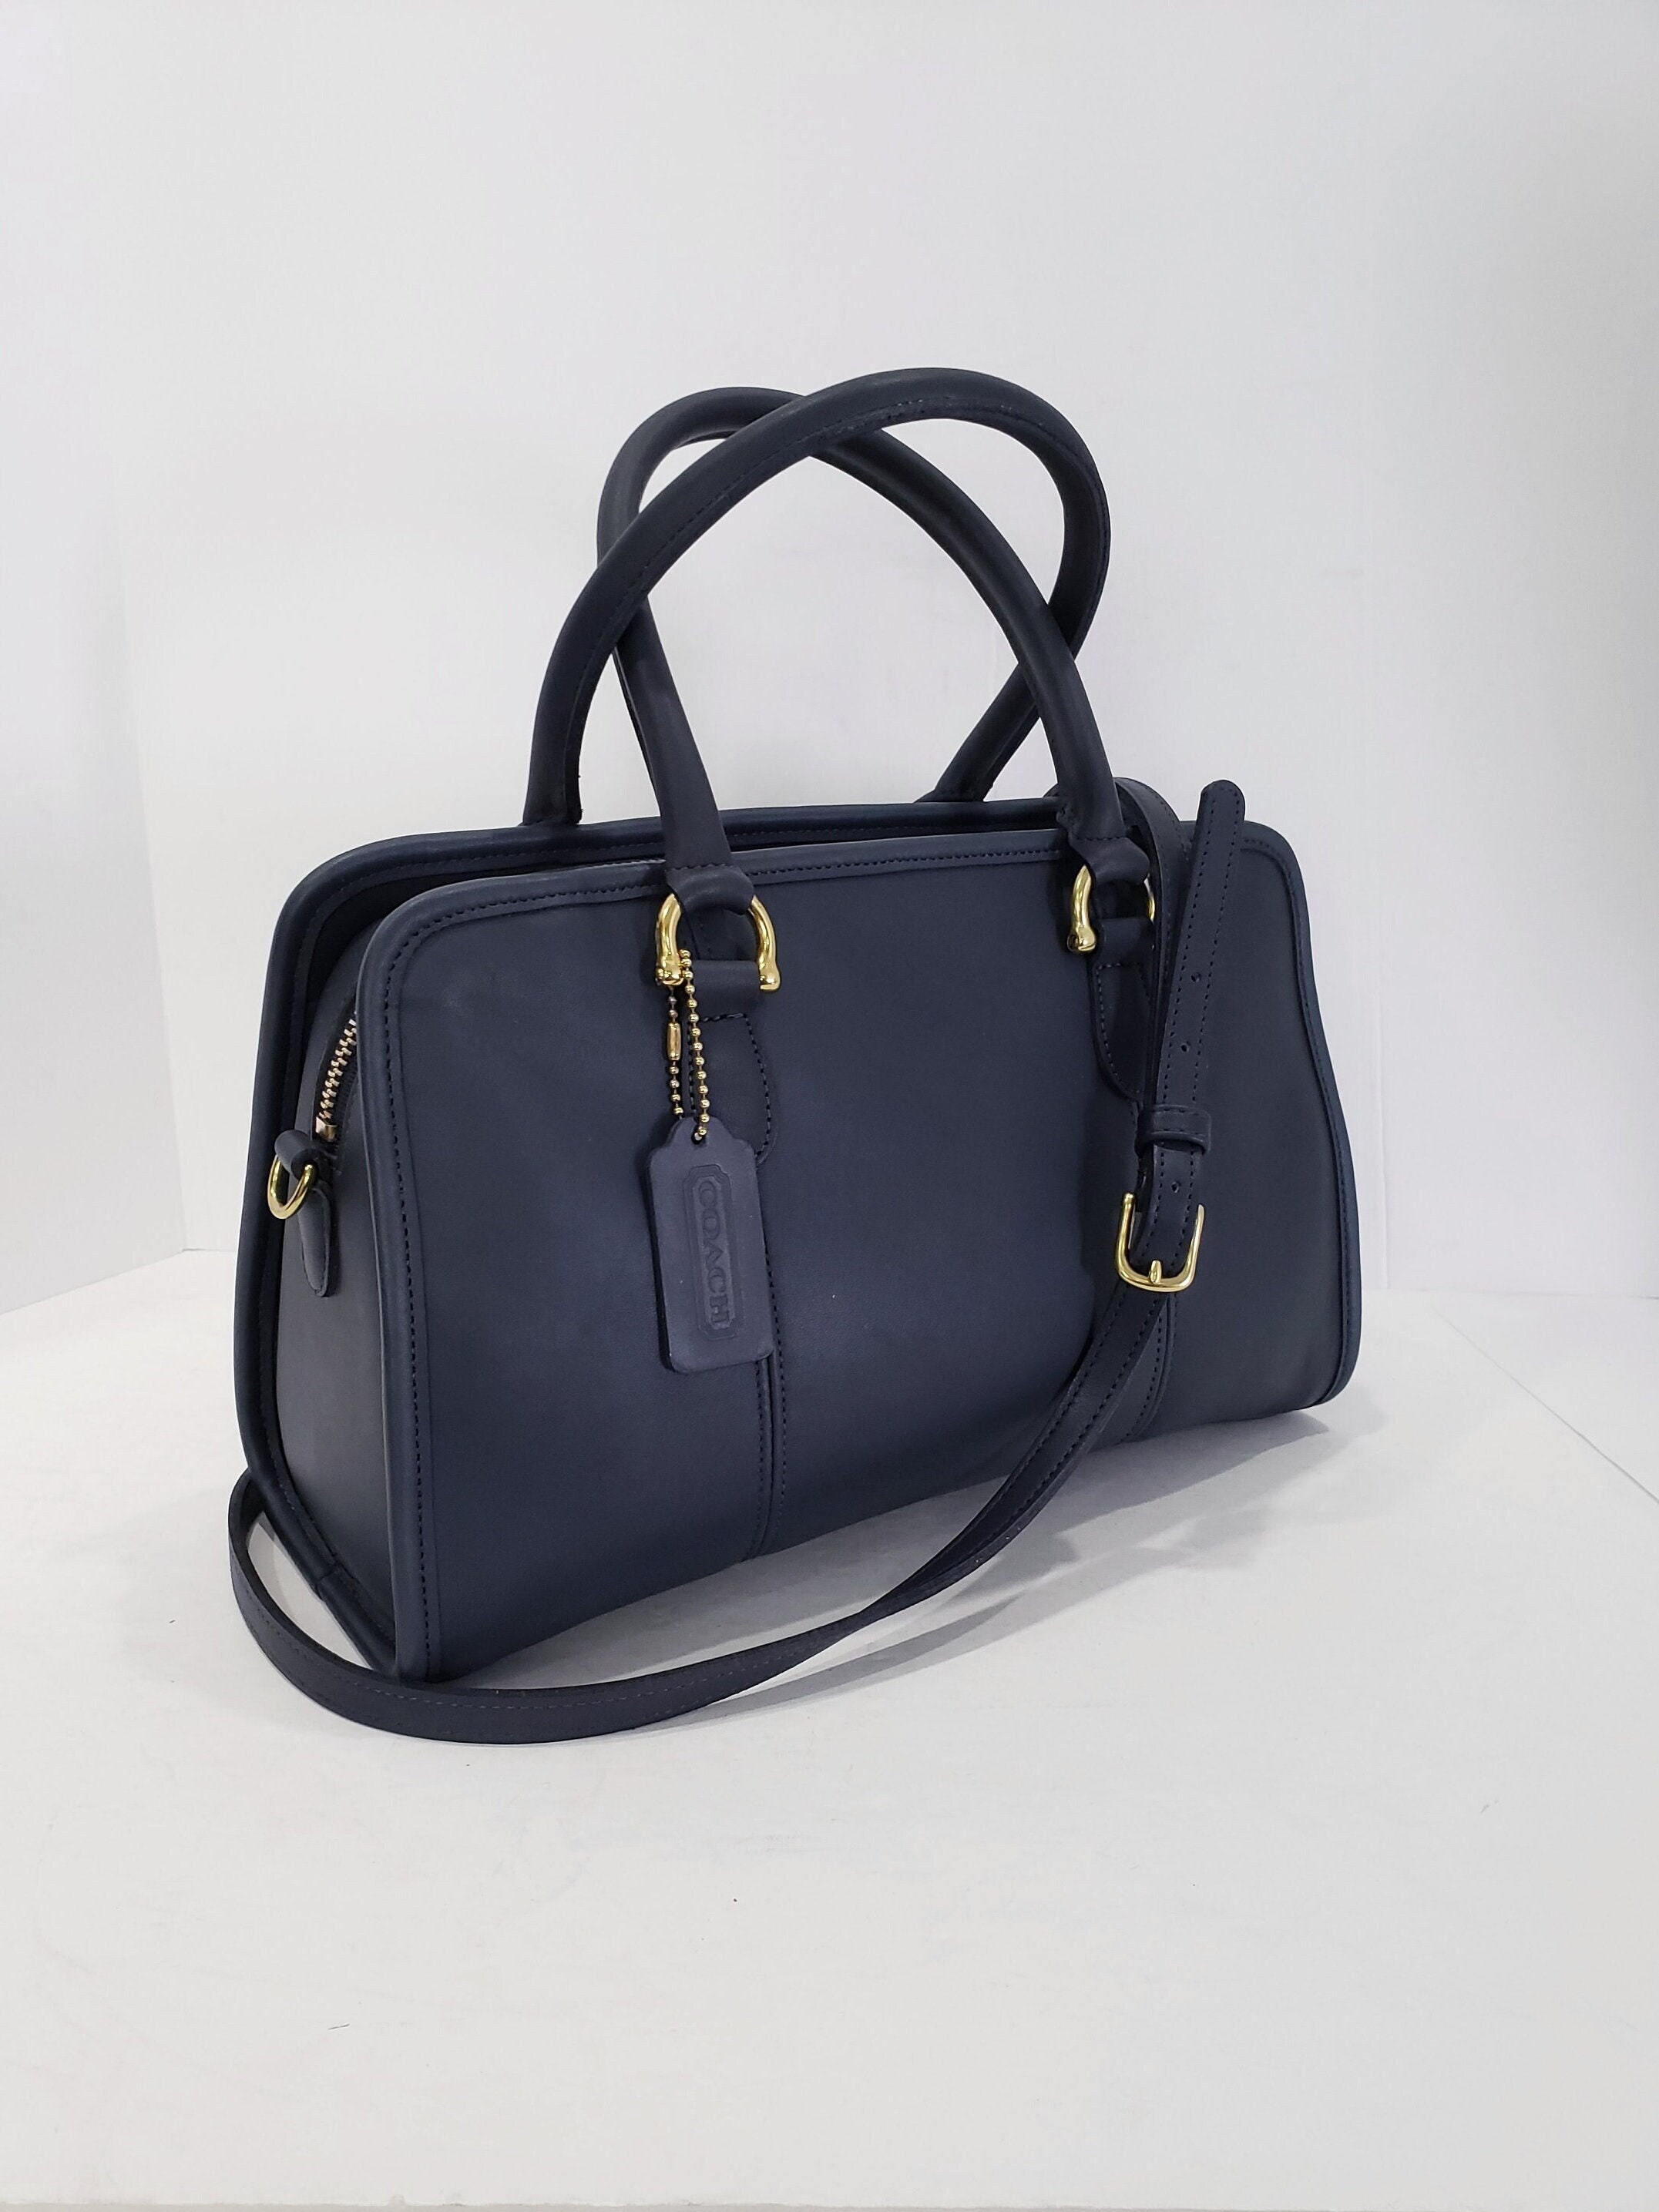 Premium Quality) 2023 New Original COACH Speedy Handbag Women PU